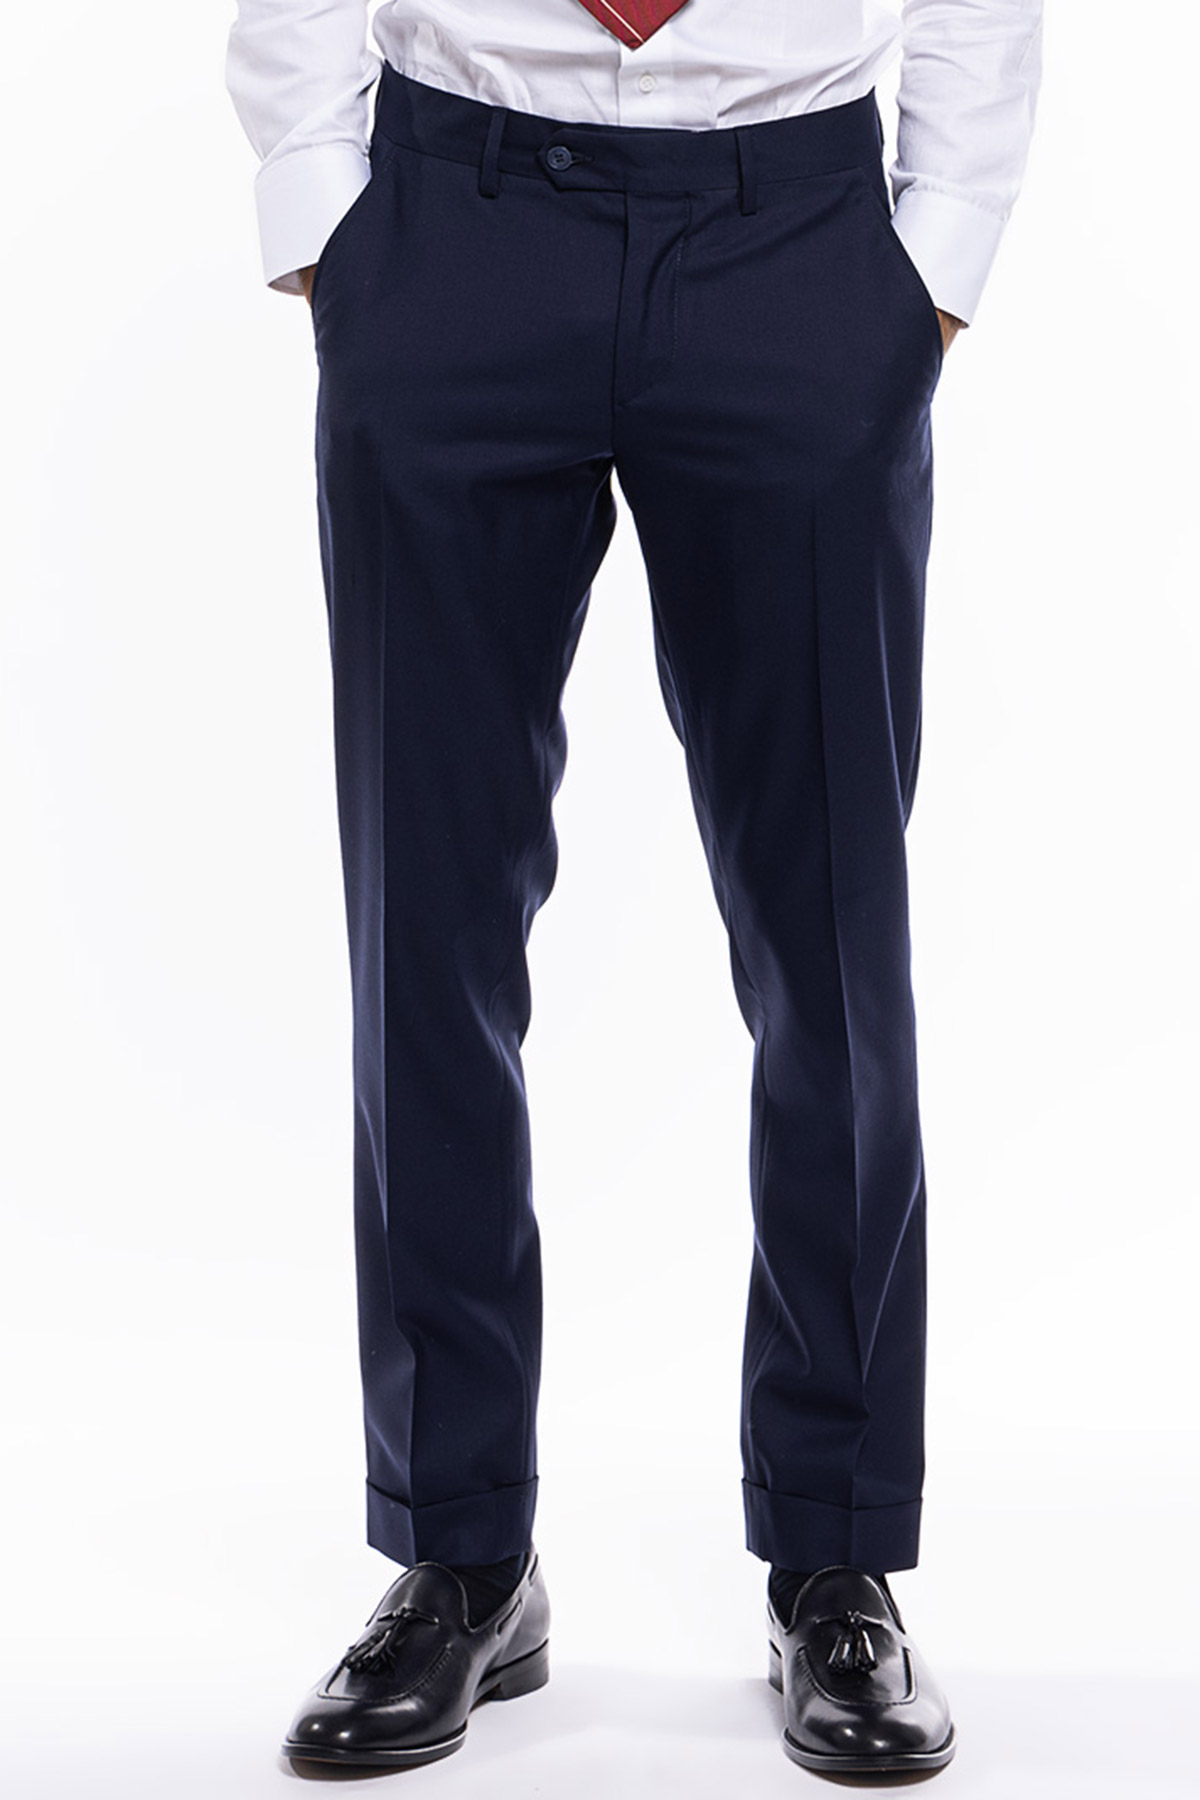 Pantalone uomo navy blu tasca america in fresco lana super 140's holland e sherry slim fit con risvolto di 5cm